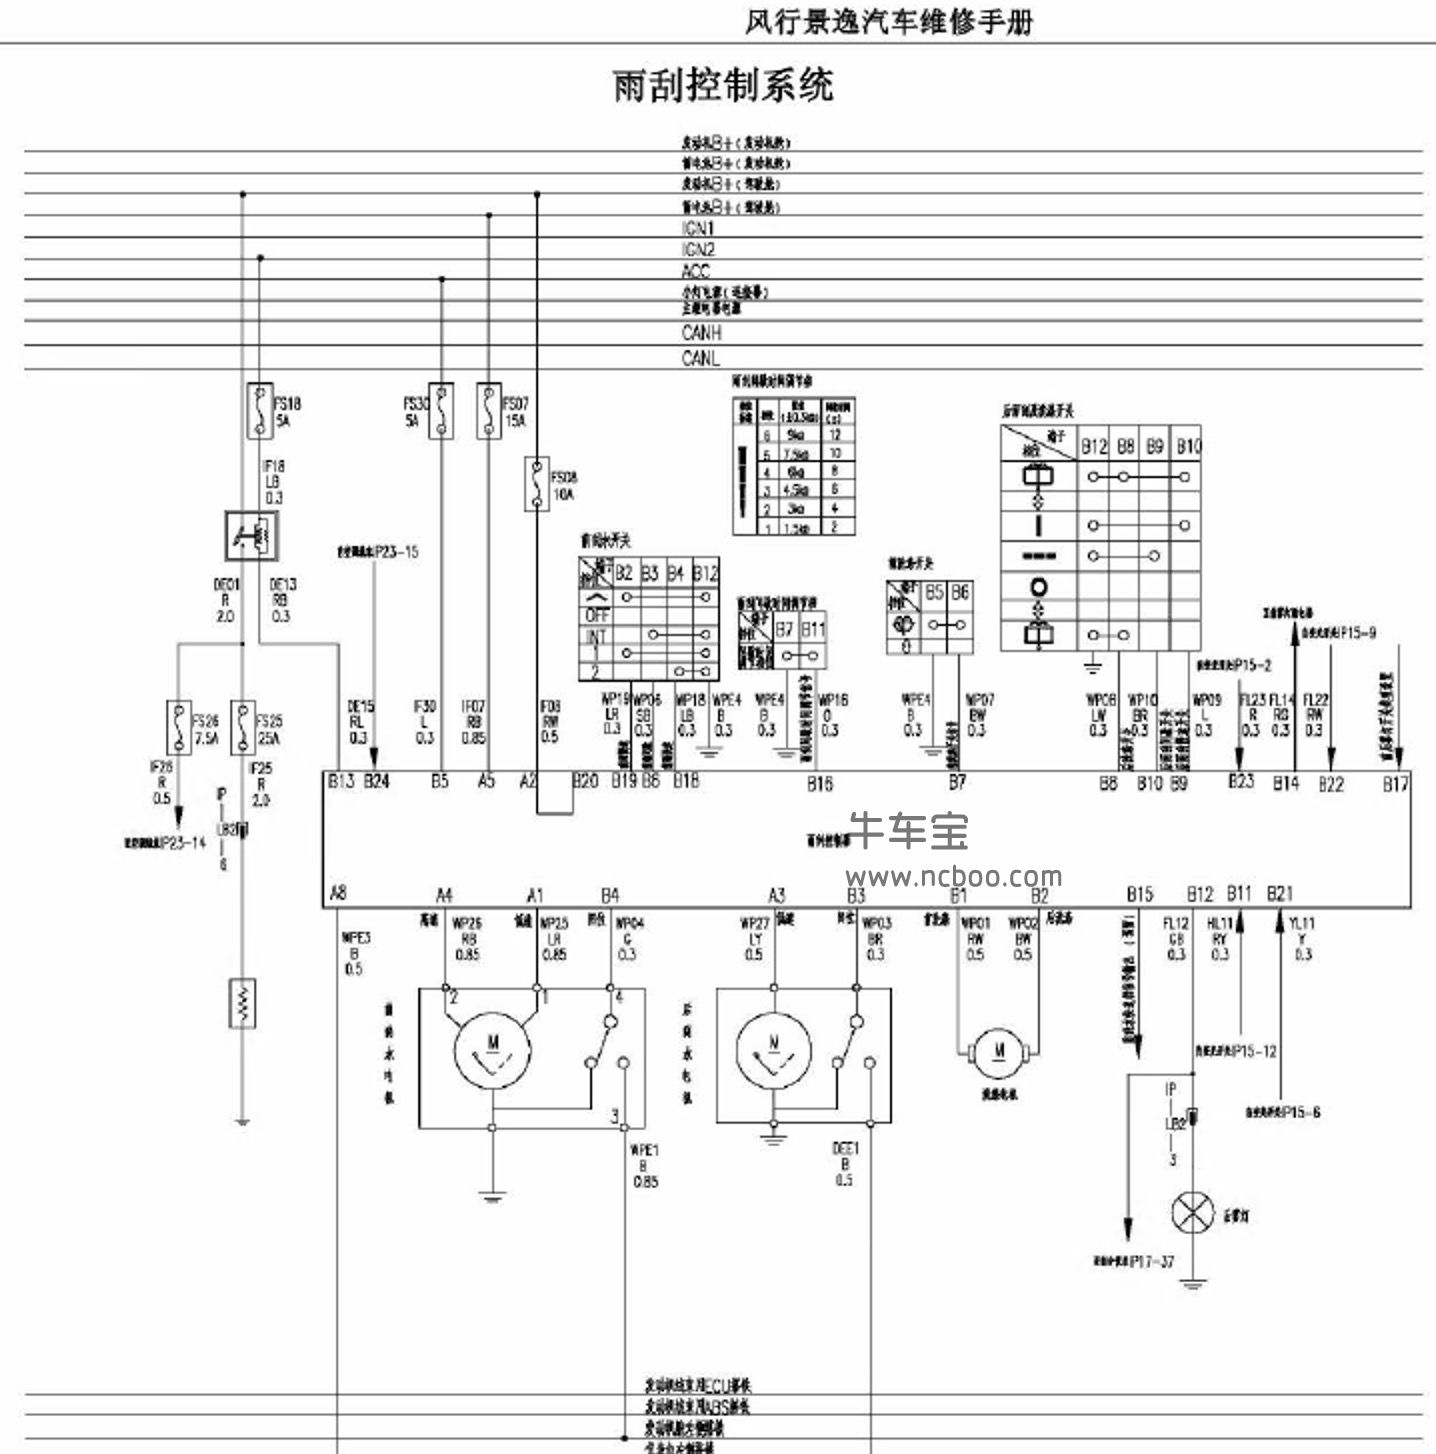 2013-2014款东风风行景逸XL LV原厂维修手册和电路图